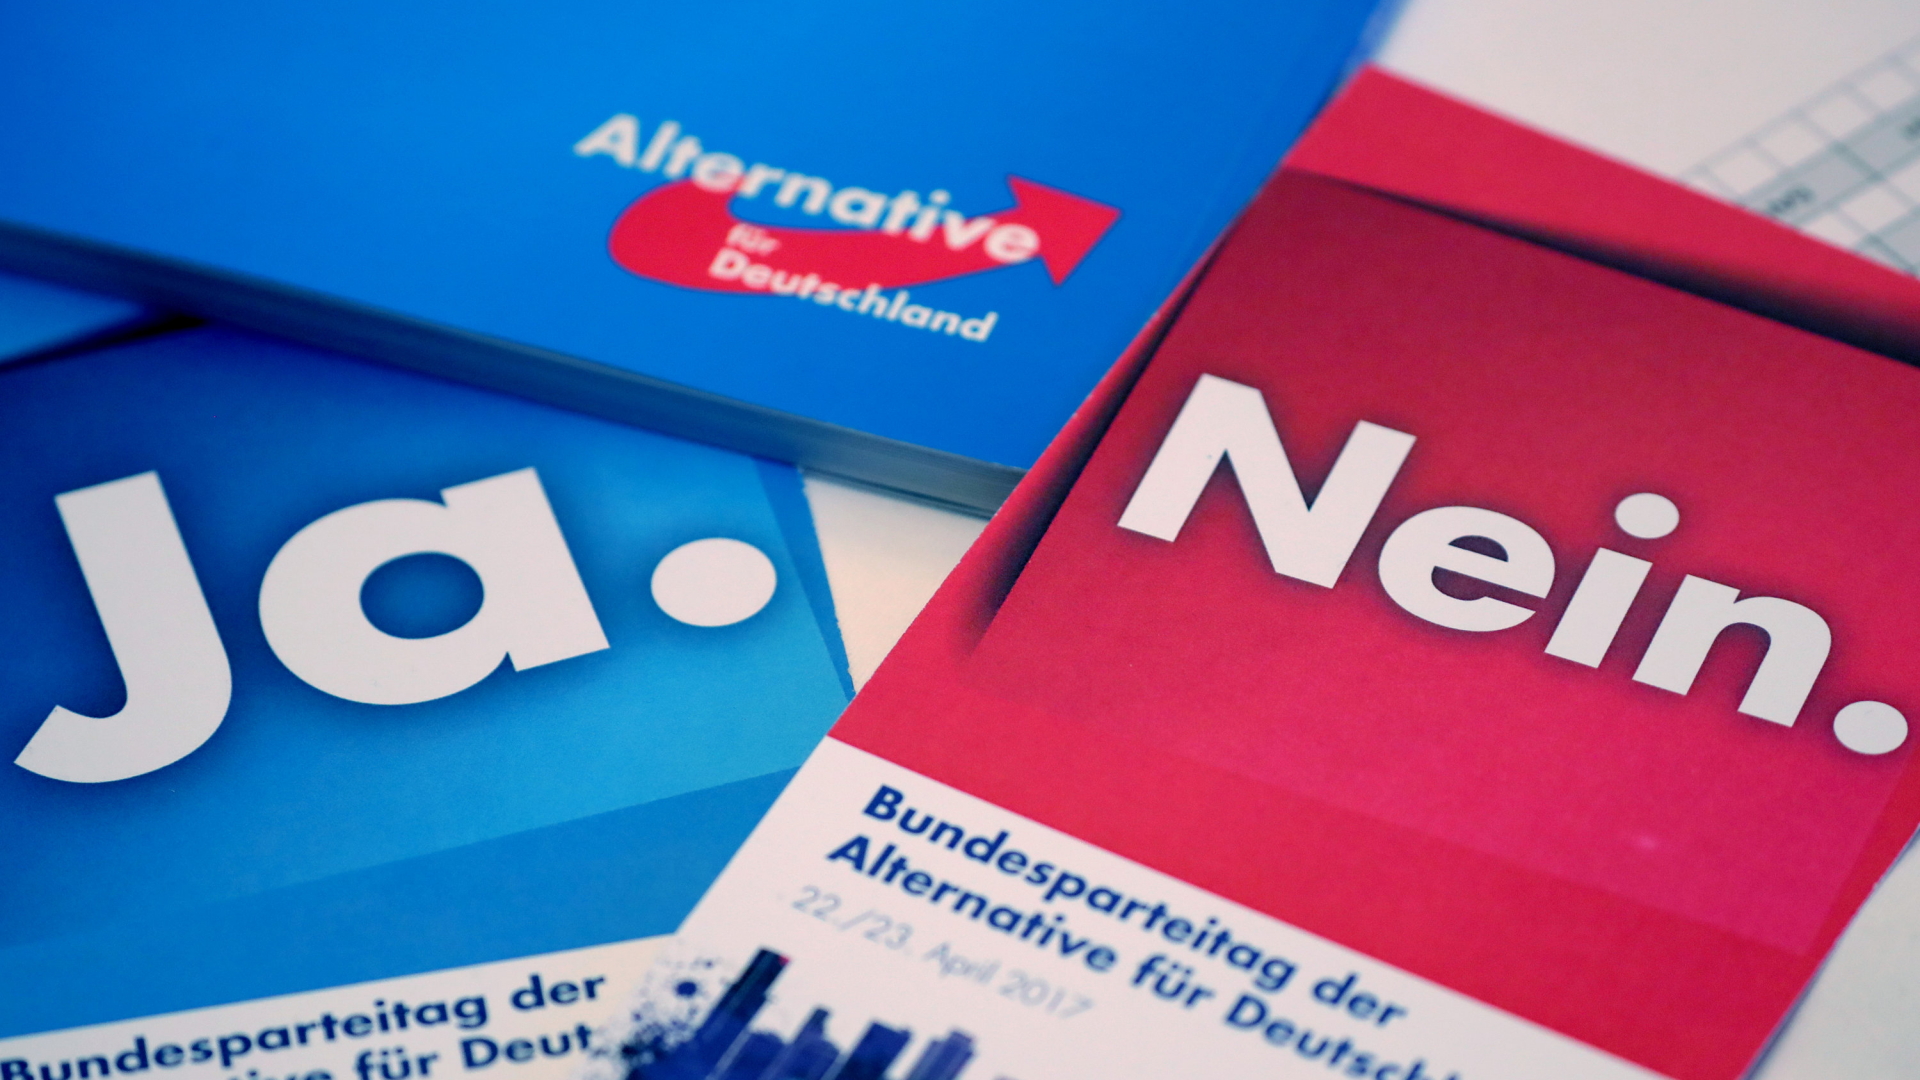 Abstimmungskarten beim AfD-Parteitag in Köln | dpa